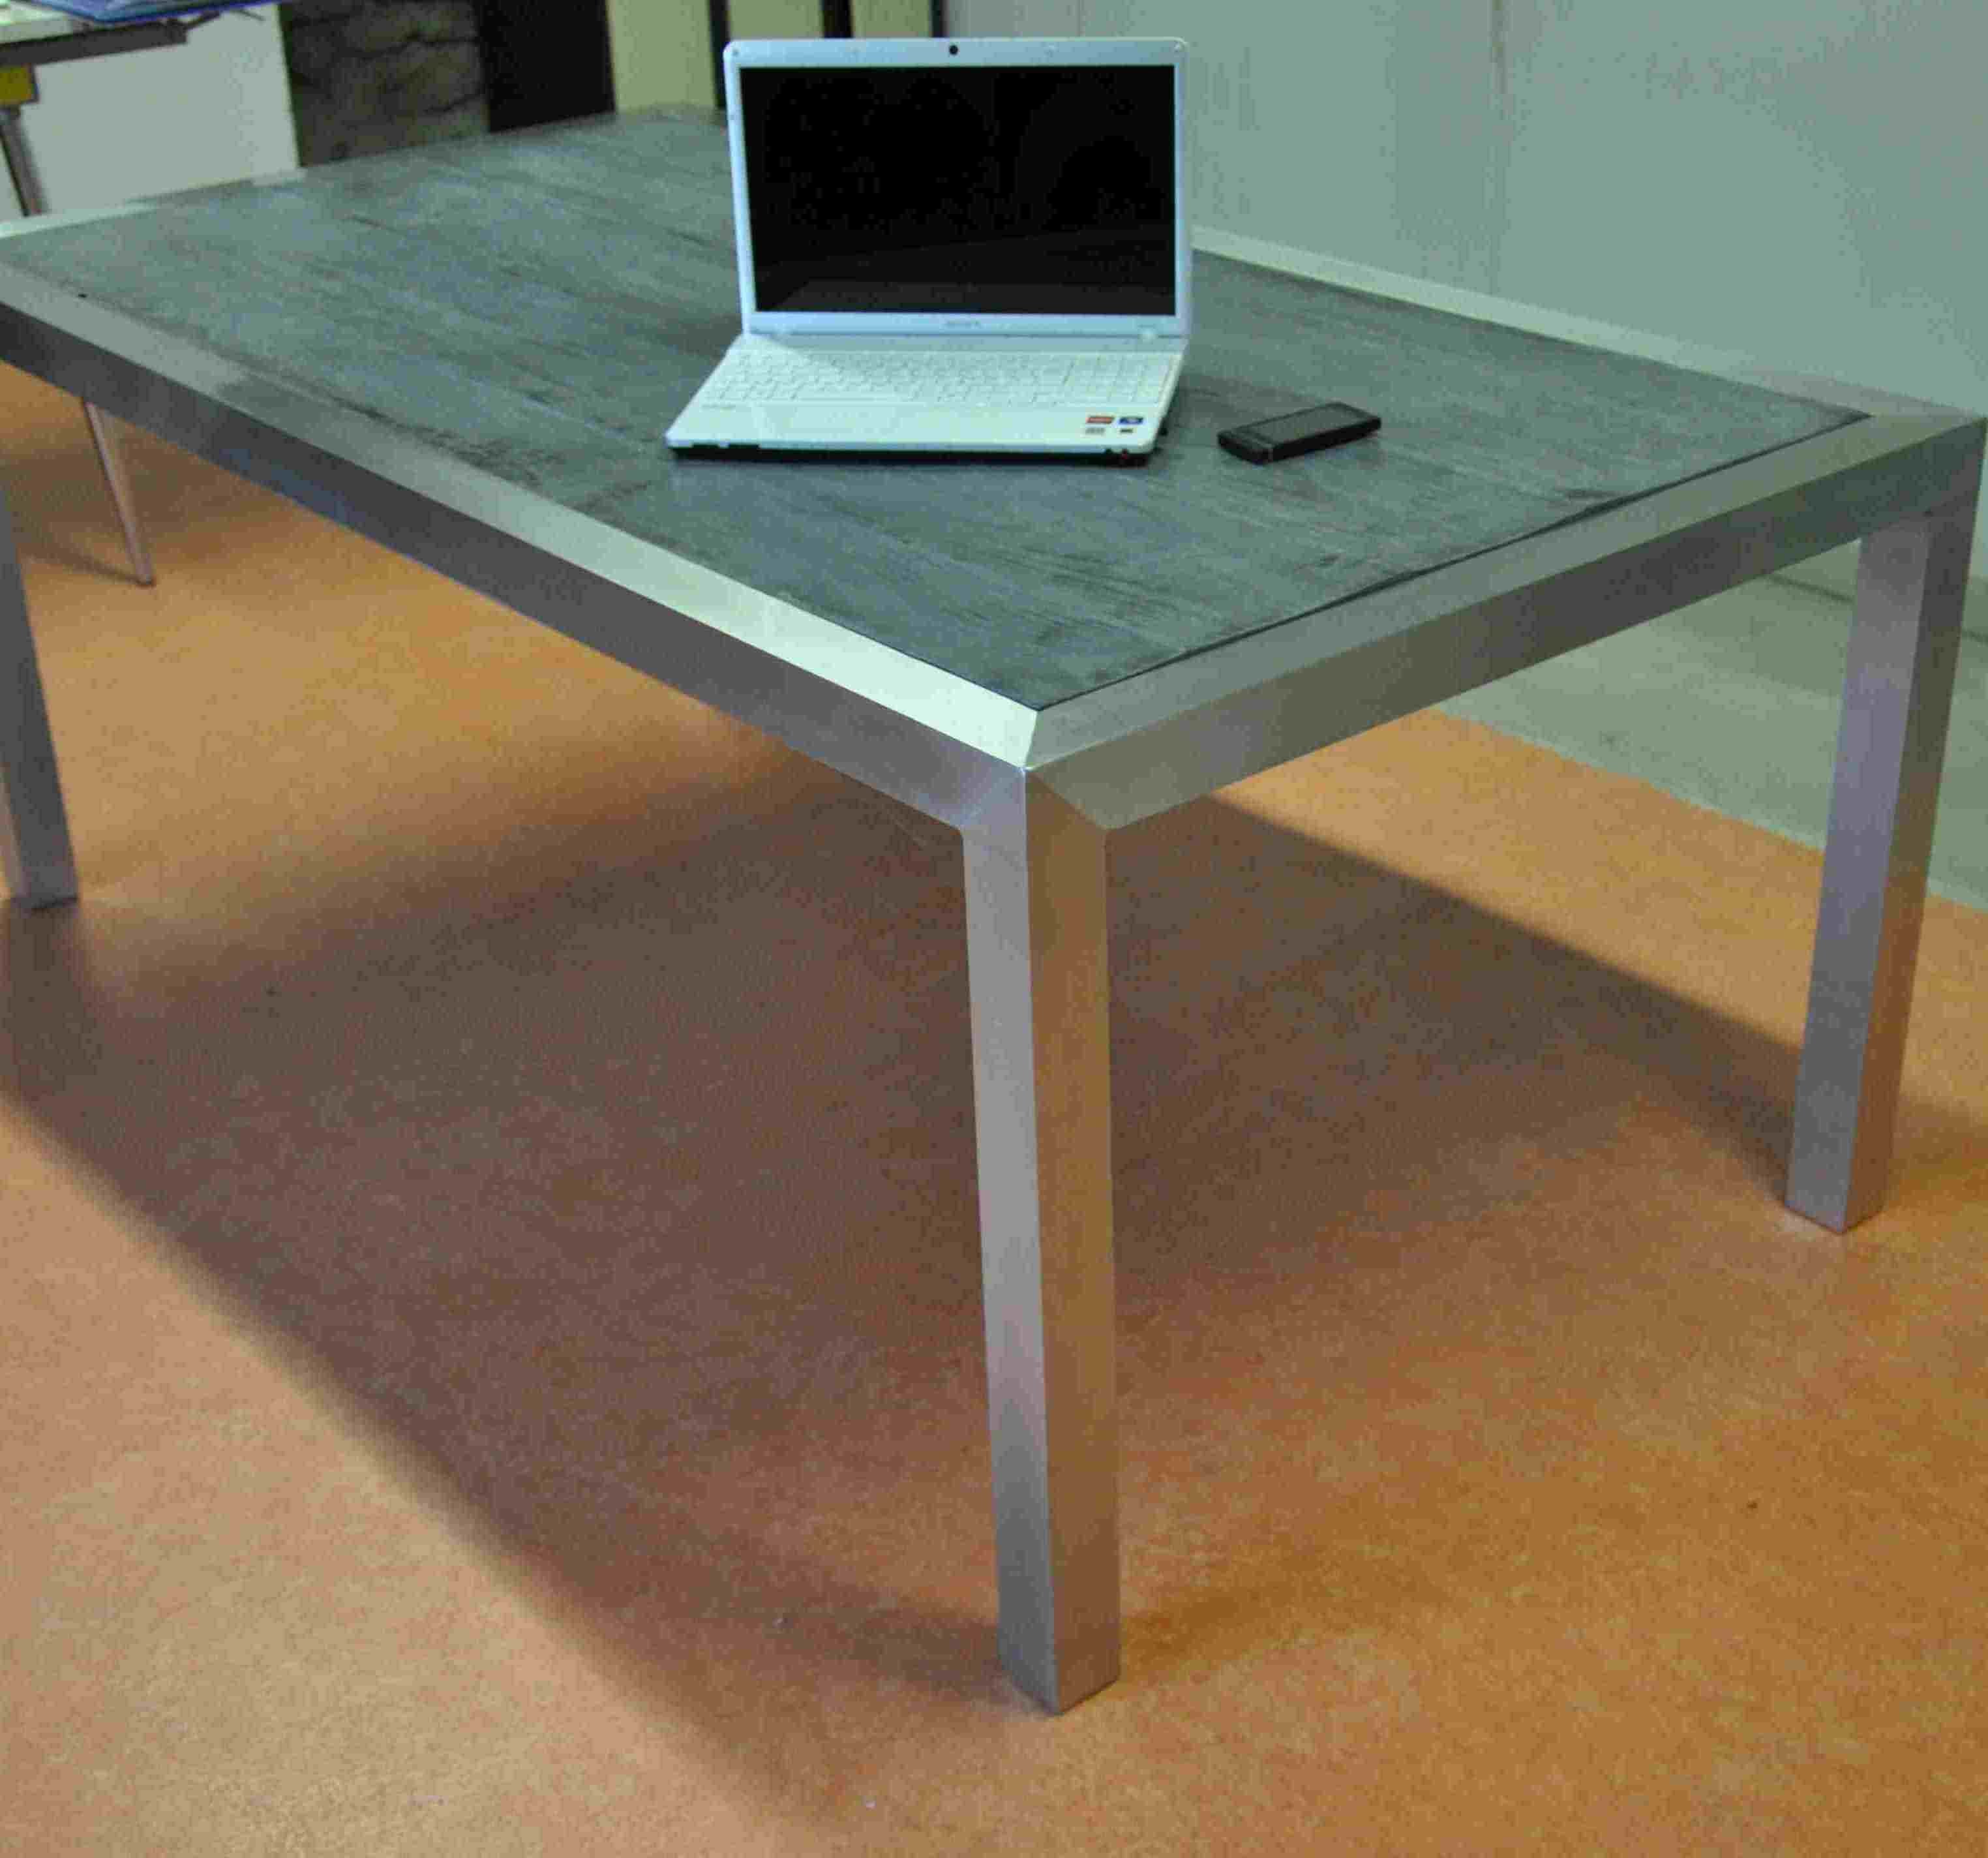 Table en aluminium brossé vernis - et plateau en béton imitation bois